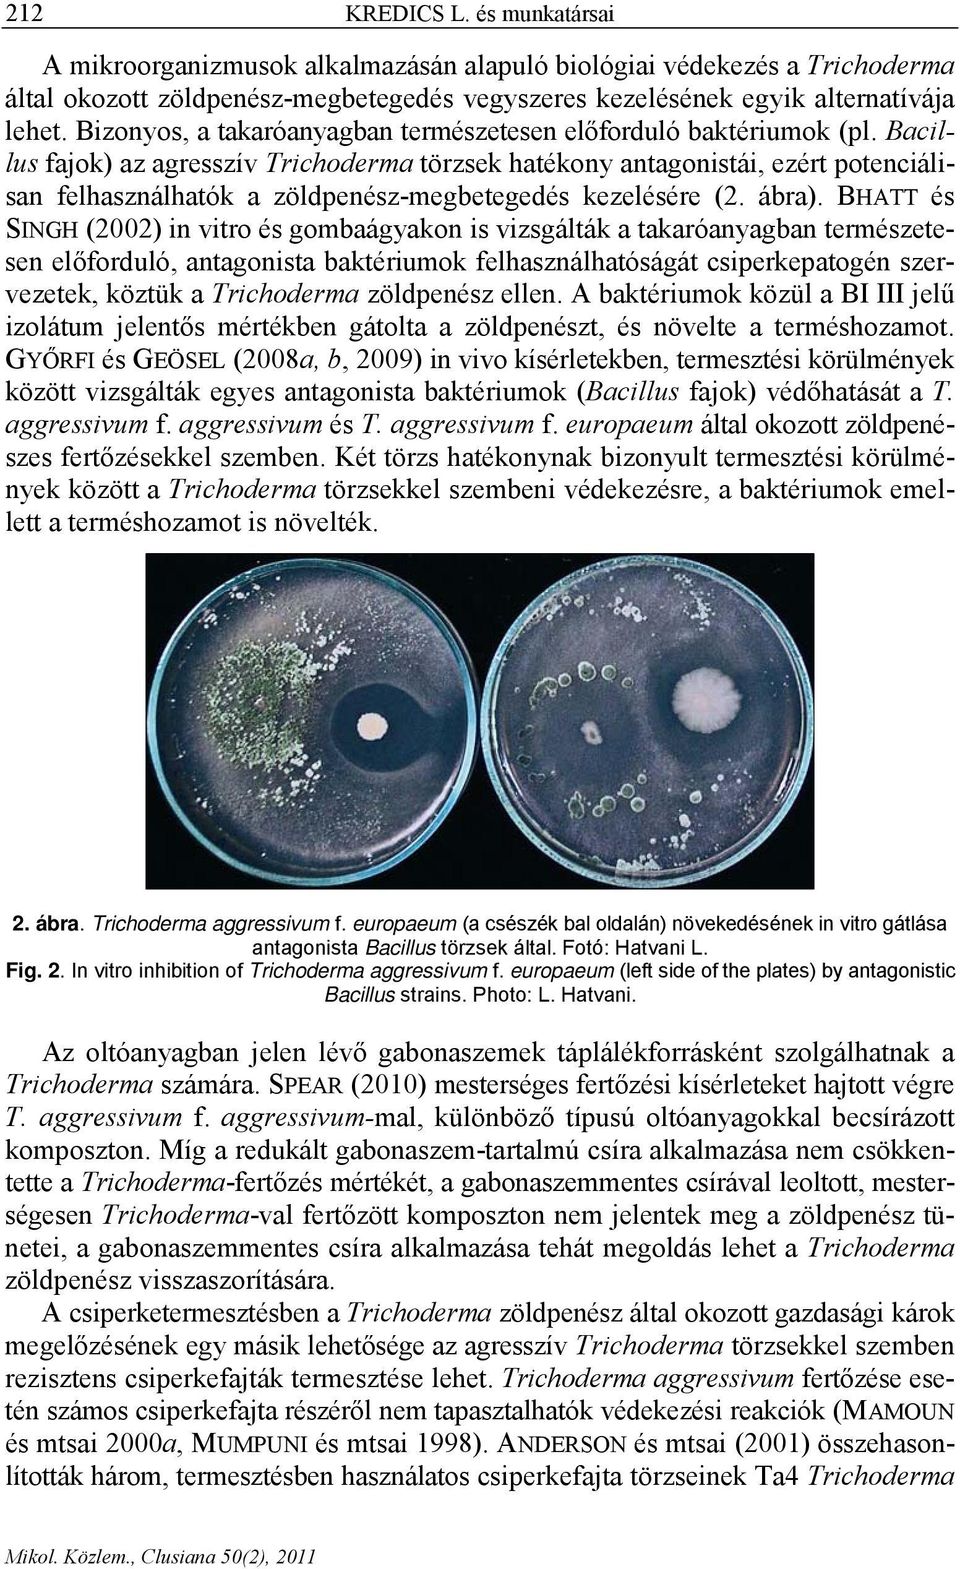 Bacillus fajok) az agresszív Trichoderma törzsek hatékony antagonistái, ezért potenciálisan felhasználhatók a zöldpenész-megbetegedés kezelésére (2. ábra).